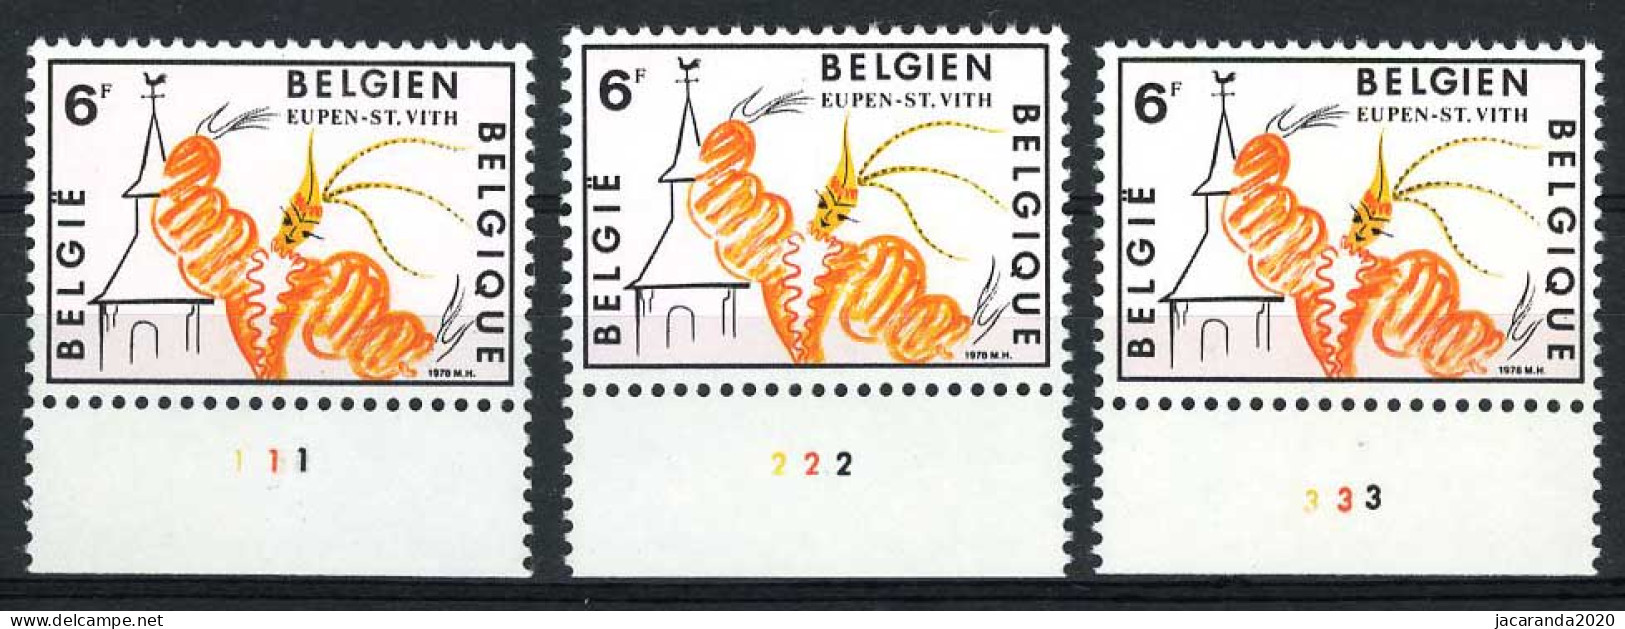 België 1910- Plaatnummers 1-2-3 - 1971-1980